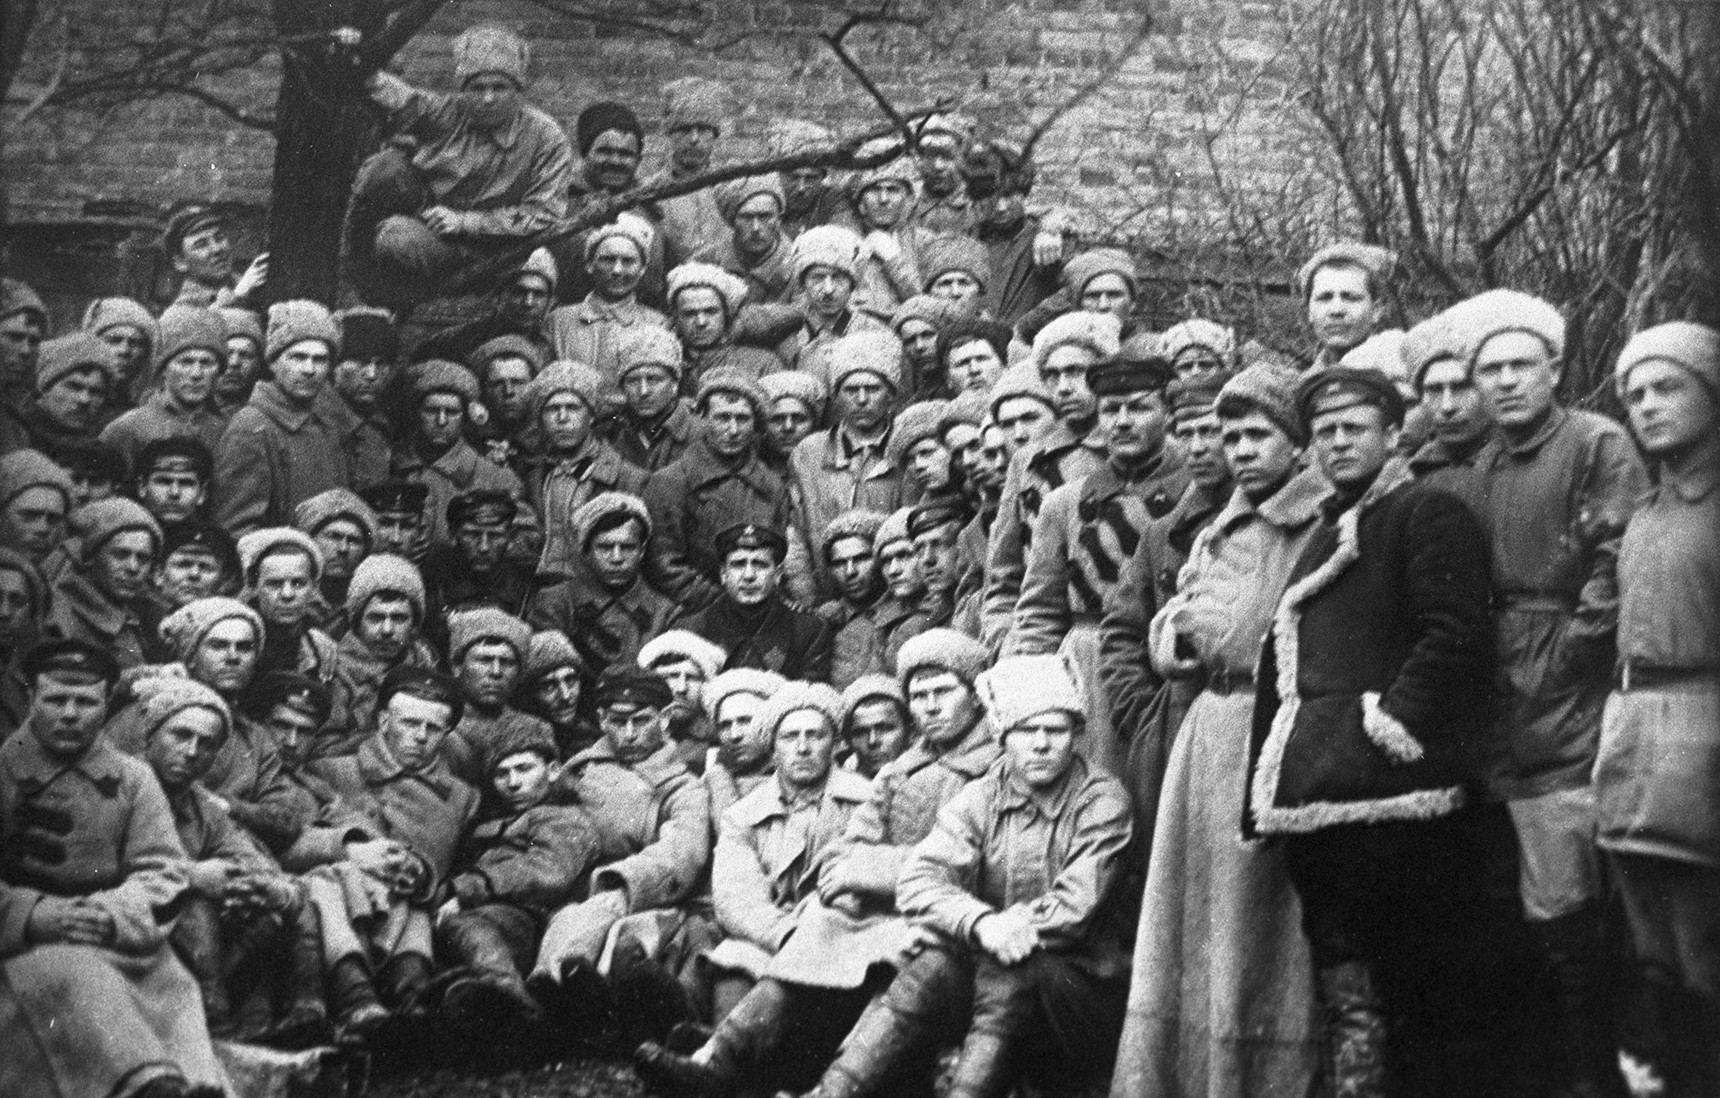 Crveni kozaci prije napada na utvrdu na Perekopu (Krim), posljednje uporište bjelogardijaca pod zapovjedništvom generala Petra Vrangelja. Studeni 1920.